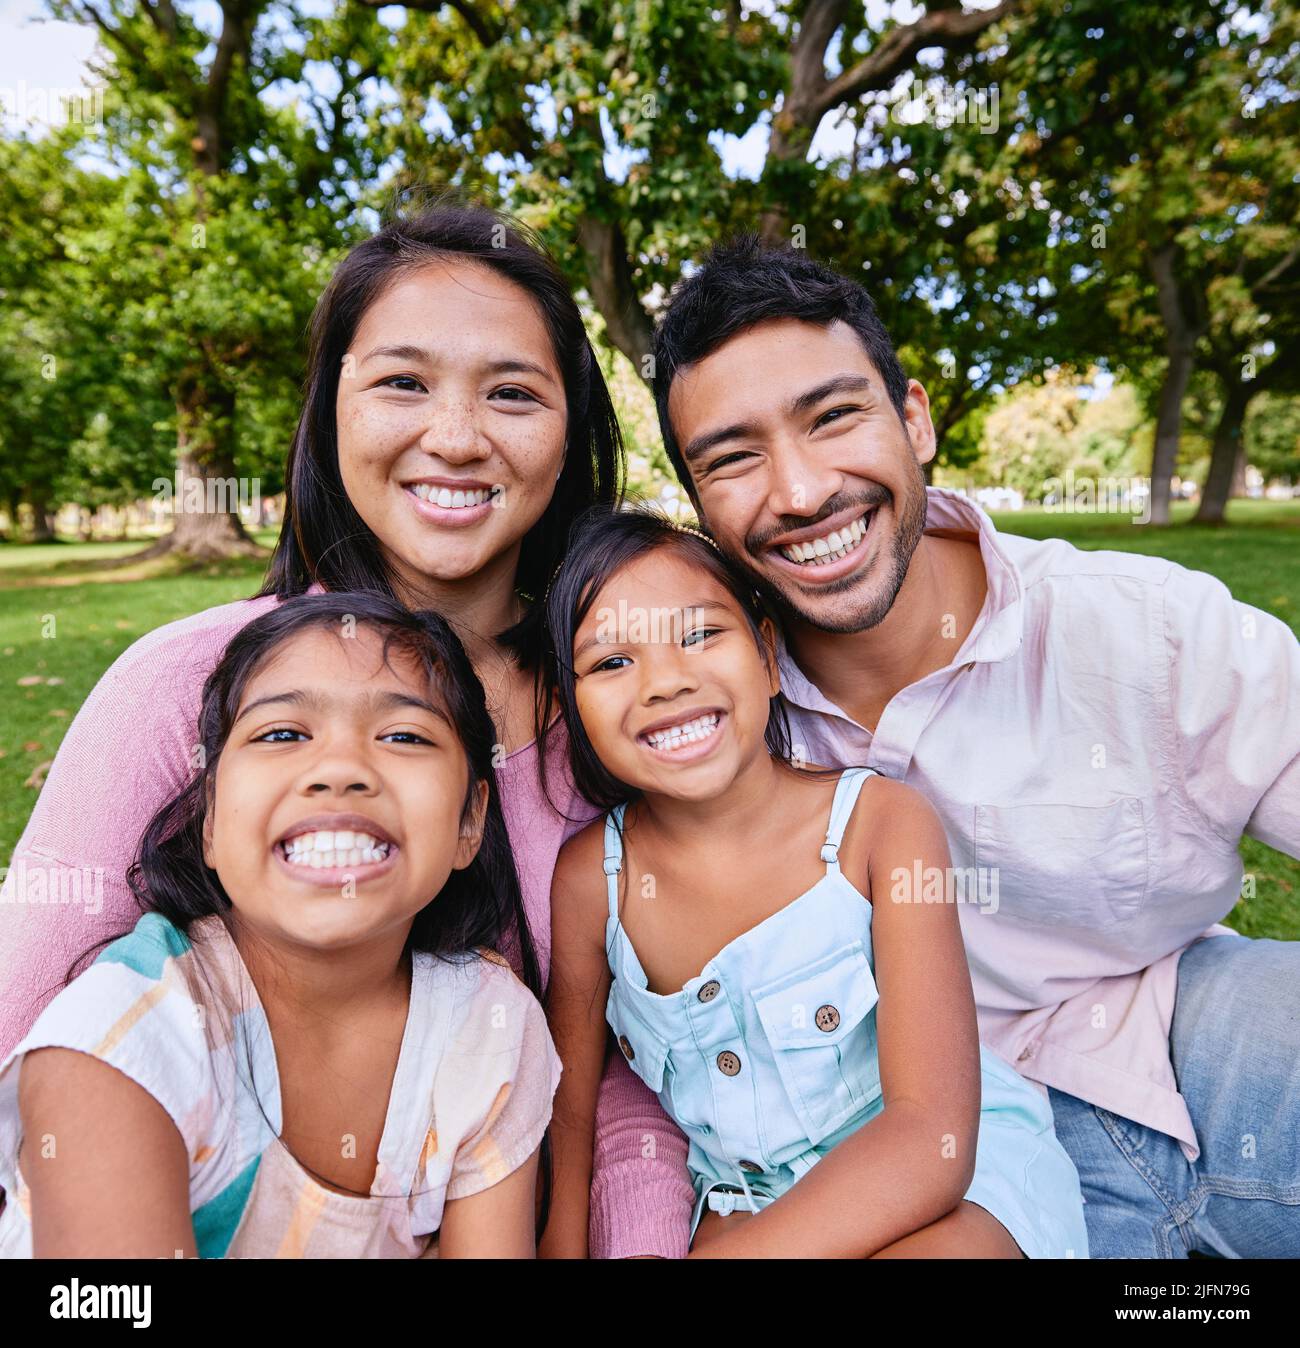 Porträt einer glücklichen asiatischen Familie im Park. Familienportrait von Ehemann und Ehefrau, die mit ihren Töchtern sitzen und ihre Freizeit genießen Stockfoto